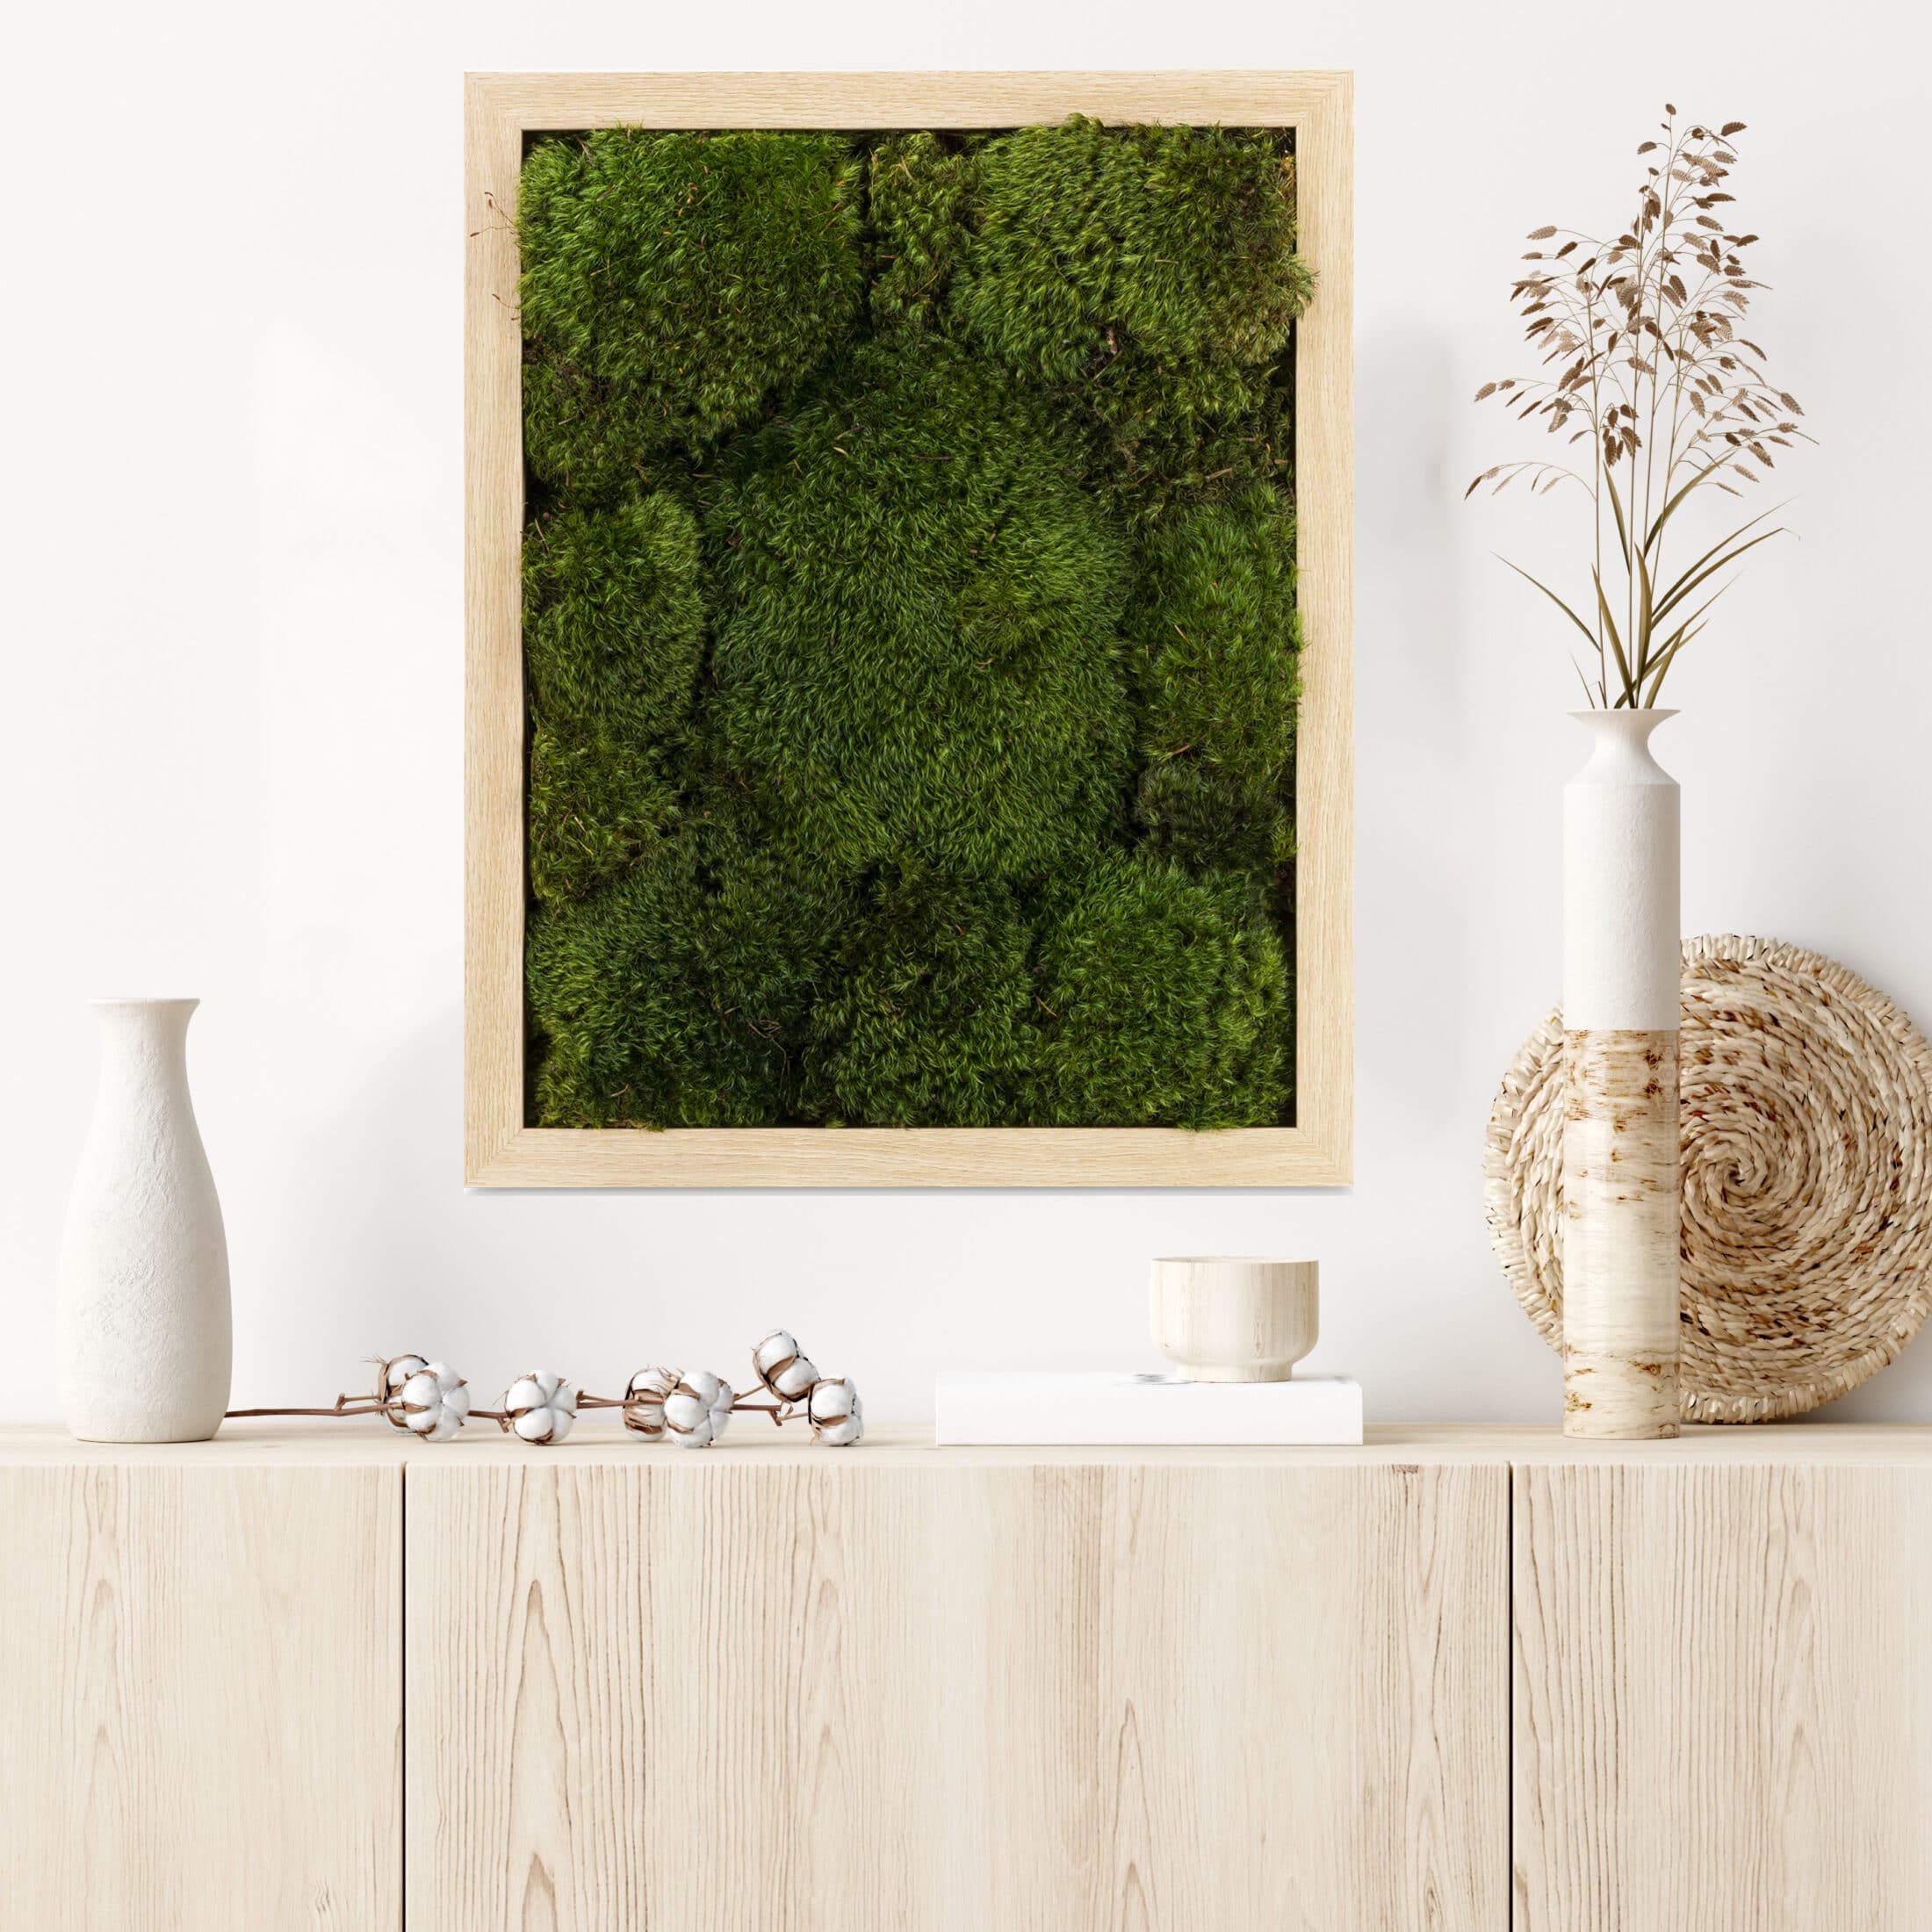 Preserved Moss Art - Moss Wall Art Frame, Wood Framed Moss Art